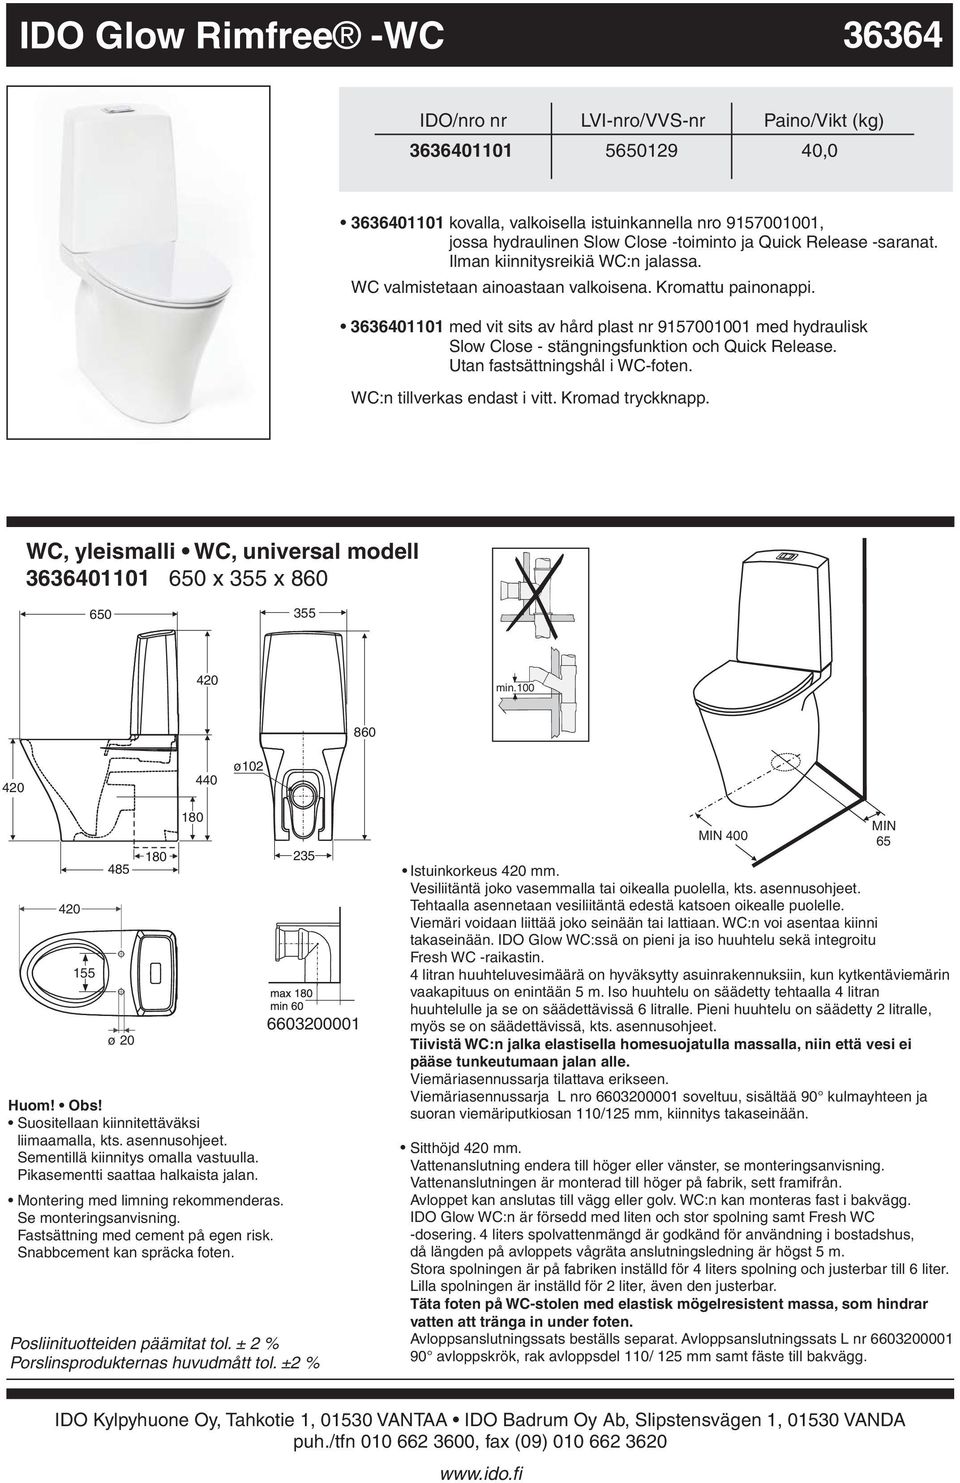 Release Utan fastsättningshål i WCfoten WC:n tillverkas endast i vitt Kromad tryckknapp WC, yleismalli WC, universal modell 3636401101 6 x 355 x 860 6 355 min100 860 440 ø102 155 485 ø 20 180 180